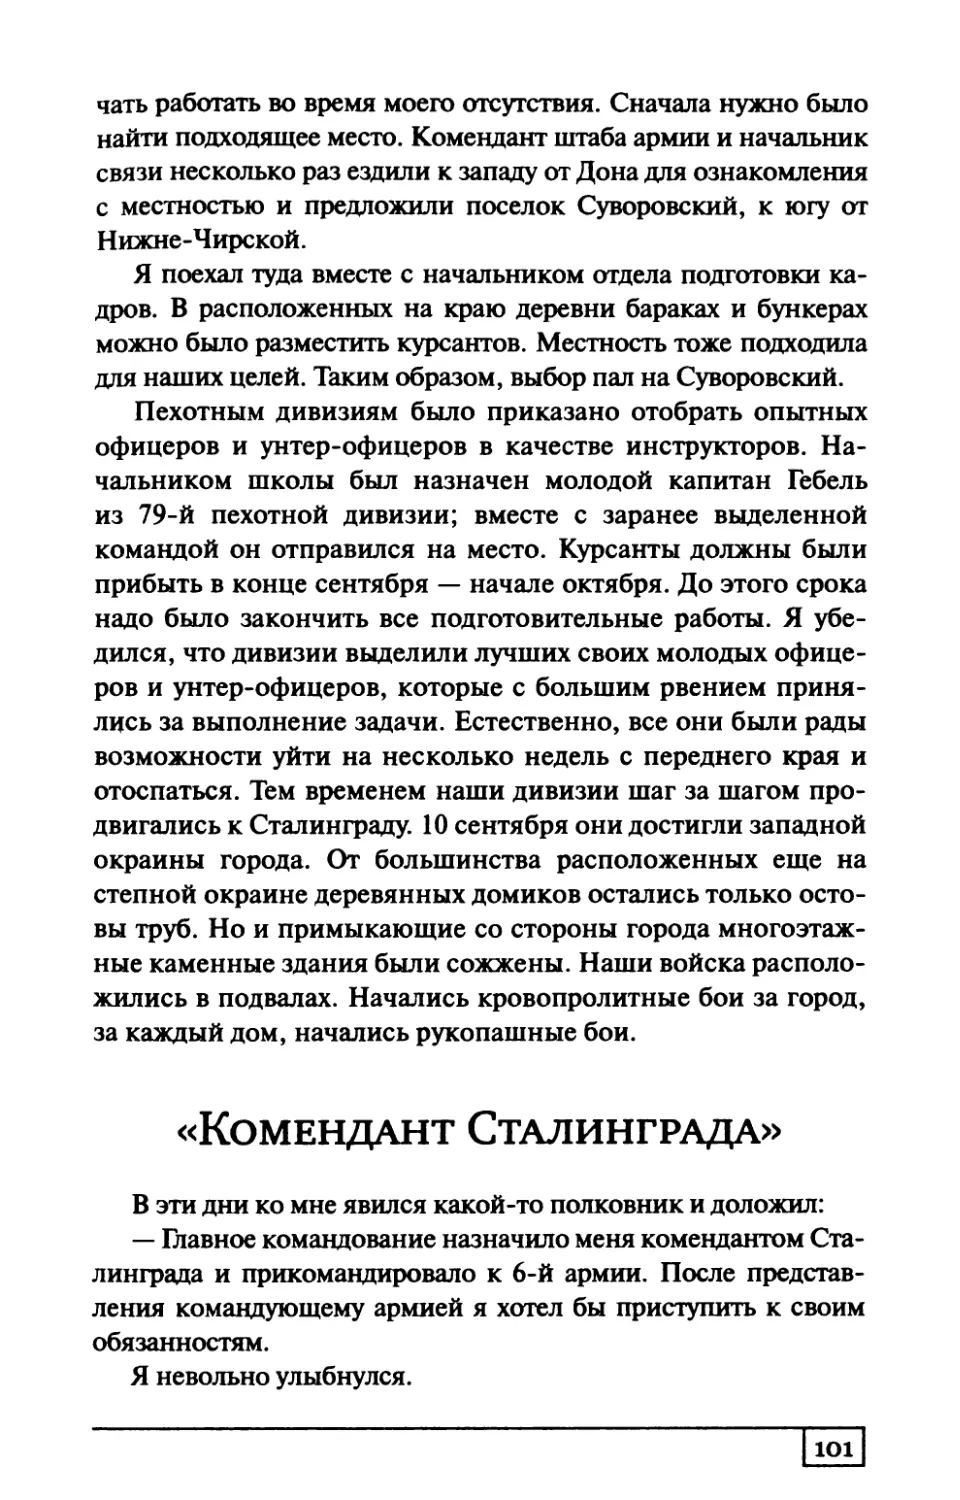 «Комендант Сталинграда»